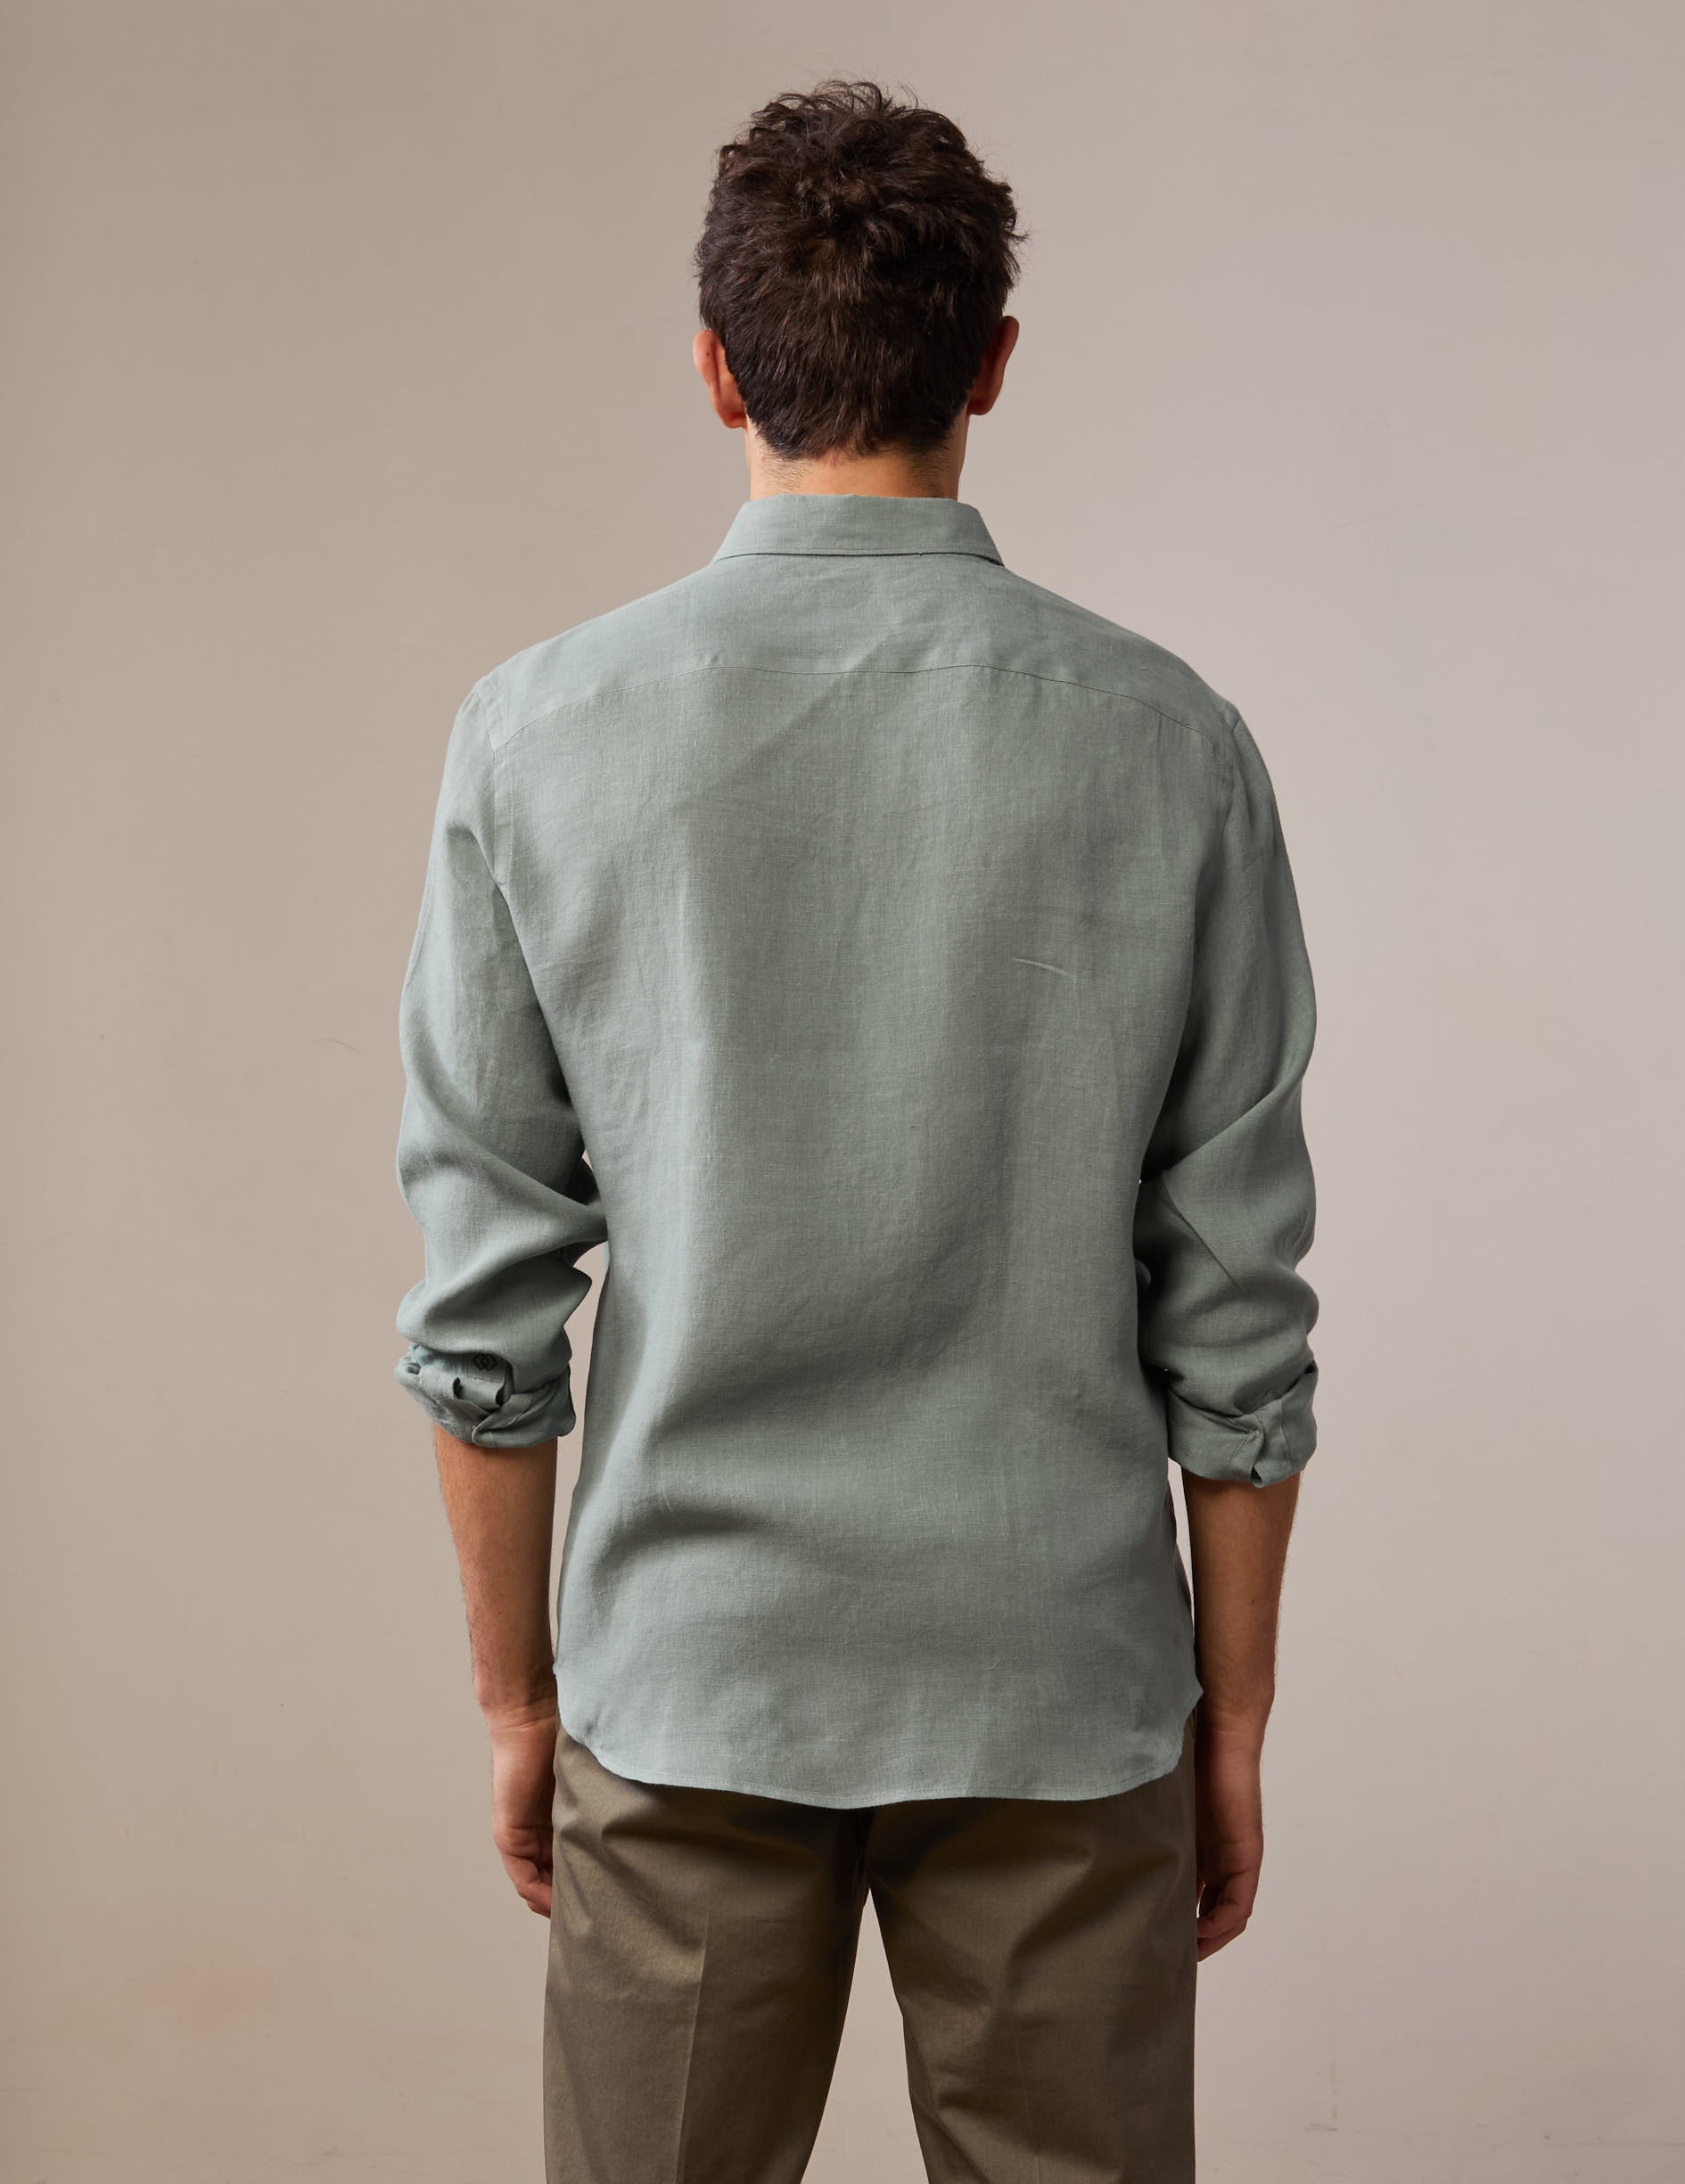 Gabriel sage linen shirt - Linen - American Collar